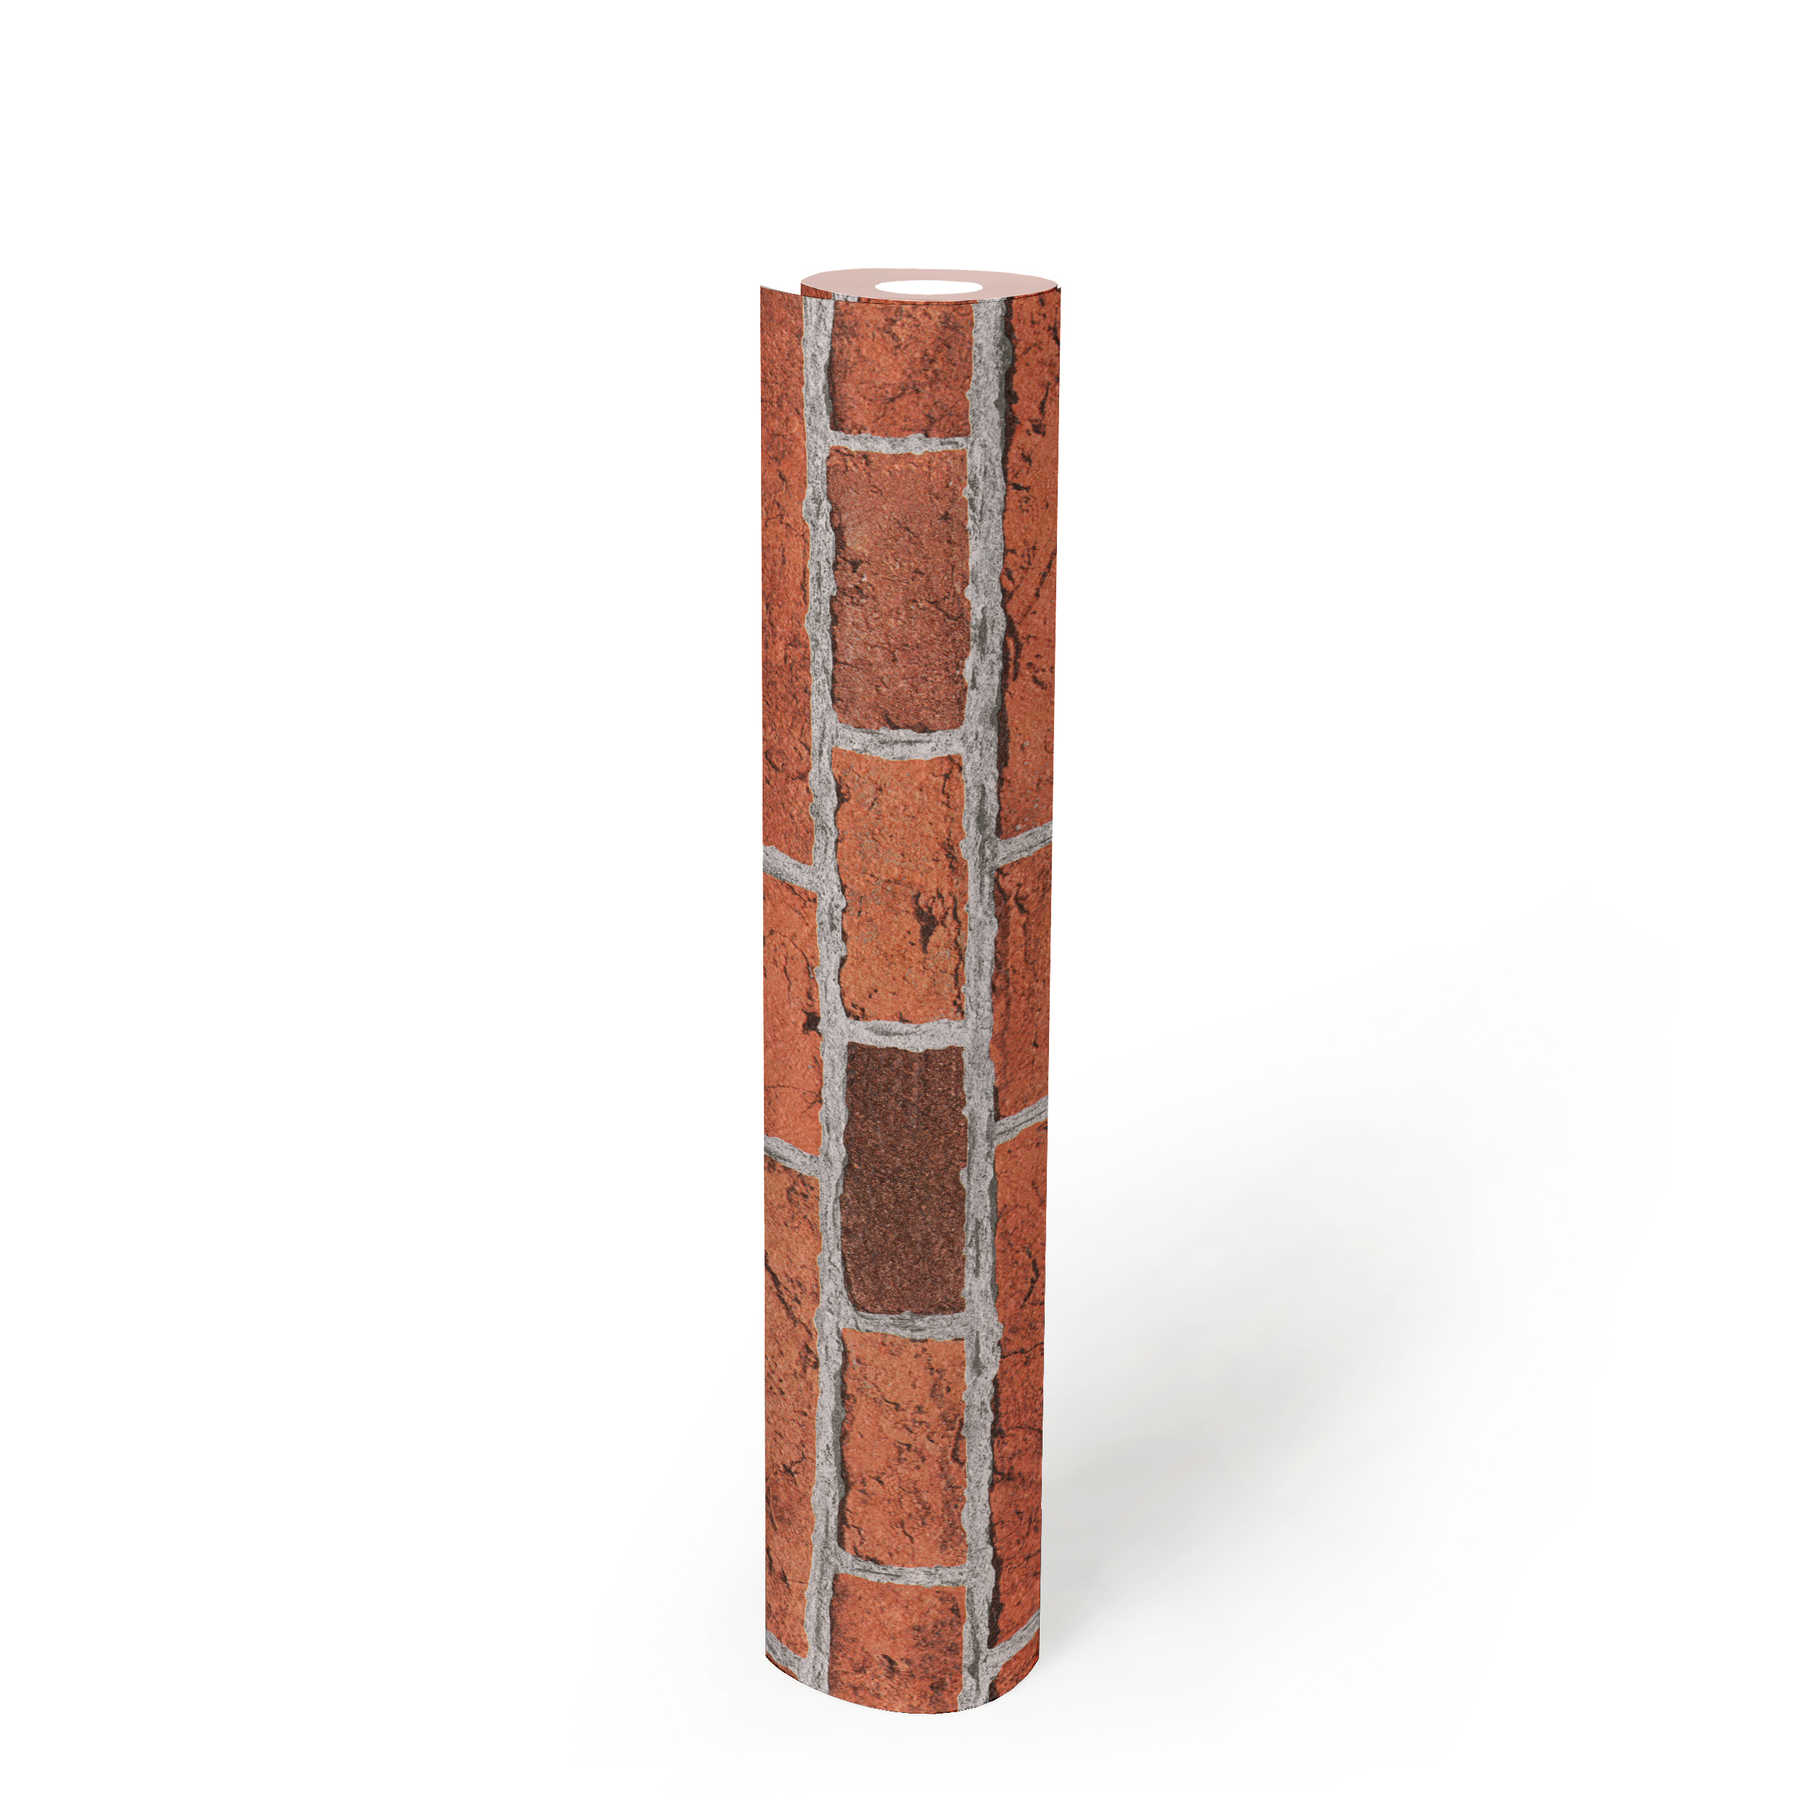             Papier peint pierre rustique avec mur de briques stylisé - rouge, gris
        